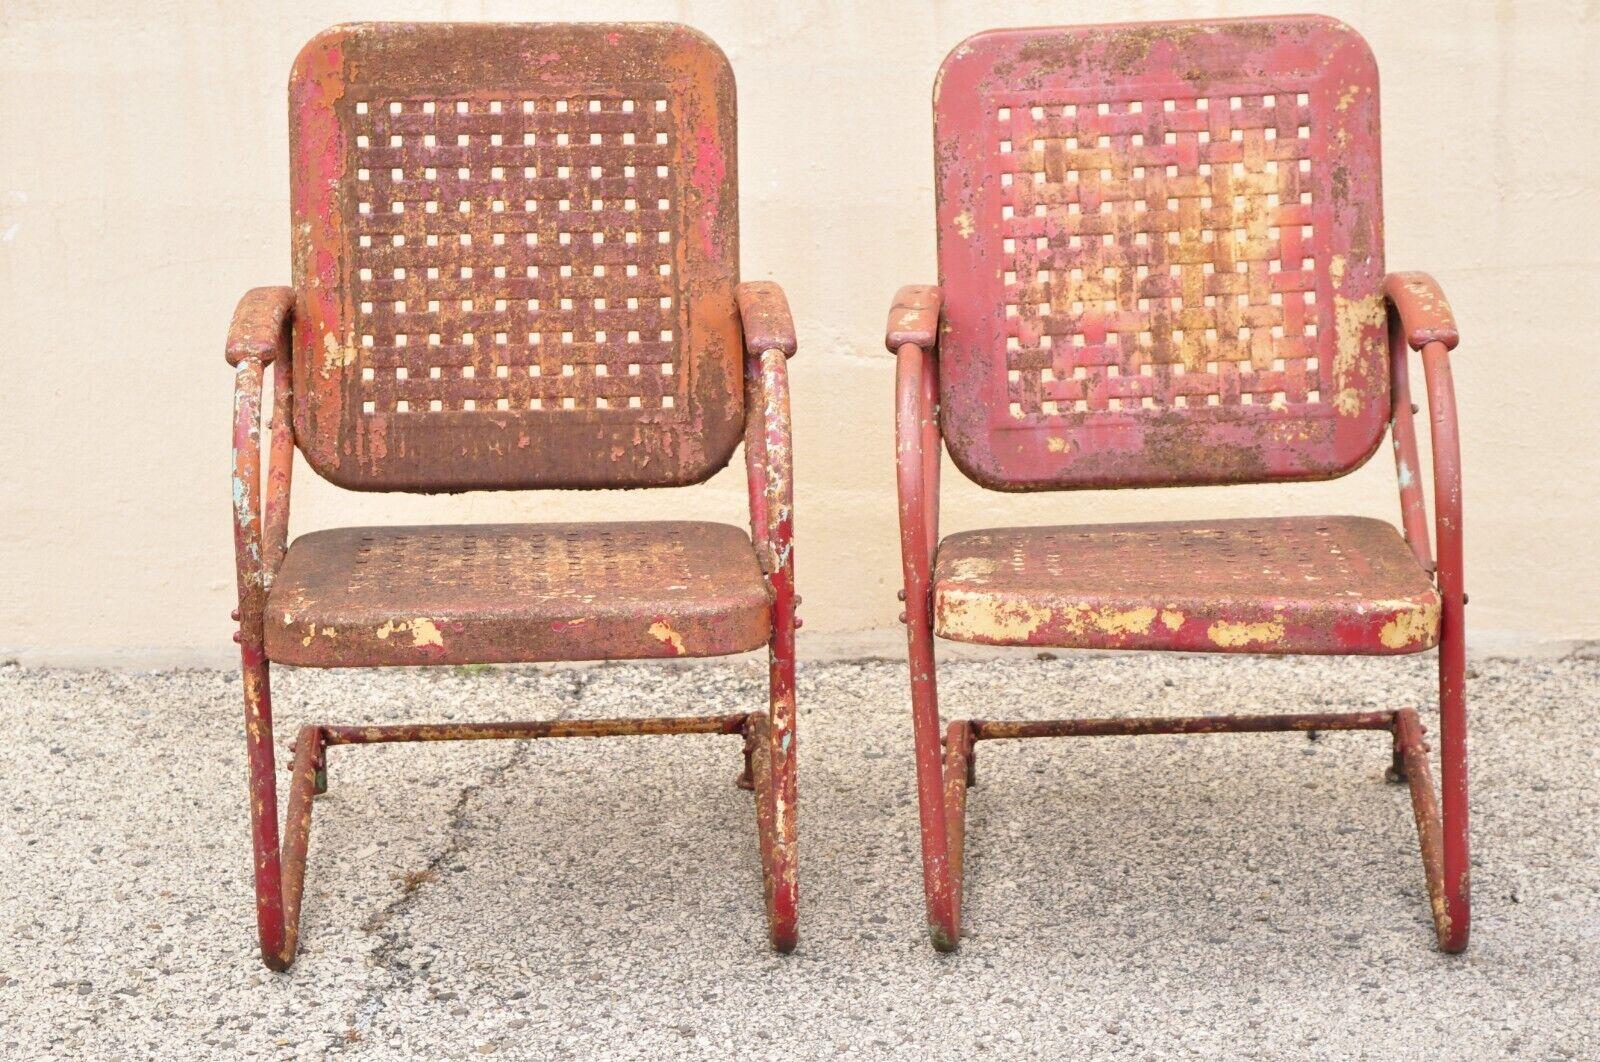 vintage metal chairs value